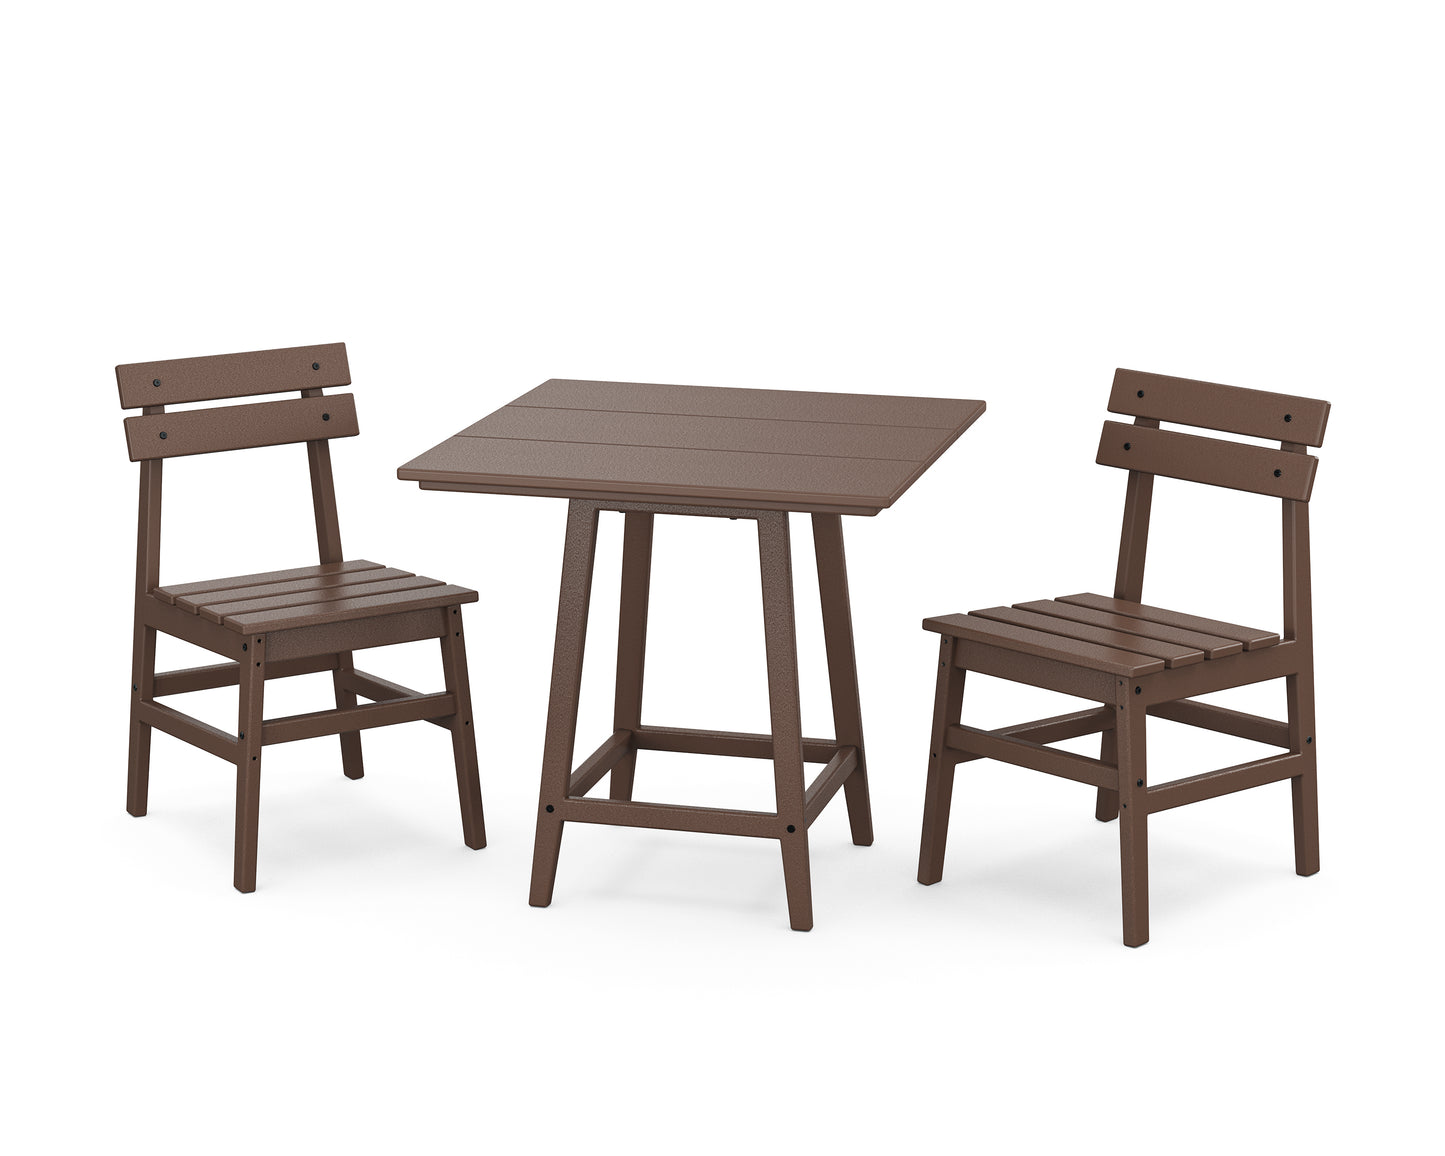 Modern Studio Plaza Chair 3-Piece Bistro Dining Set